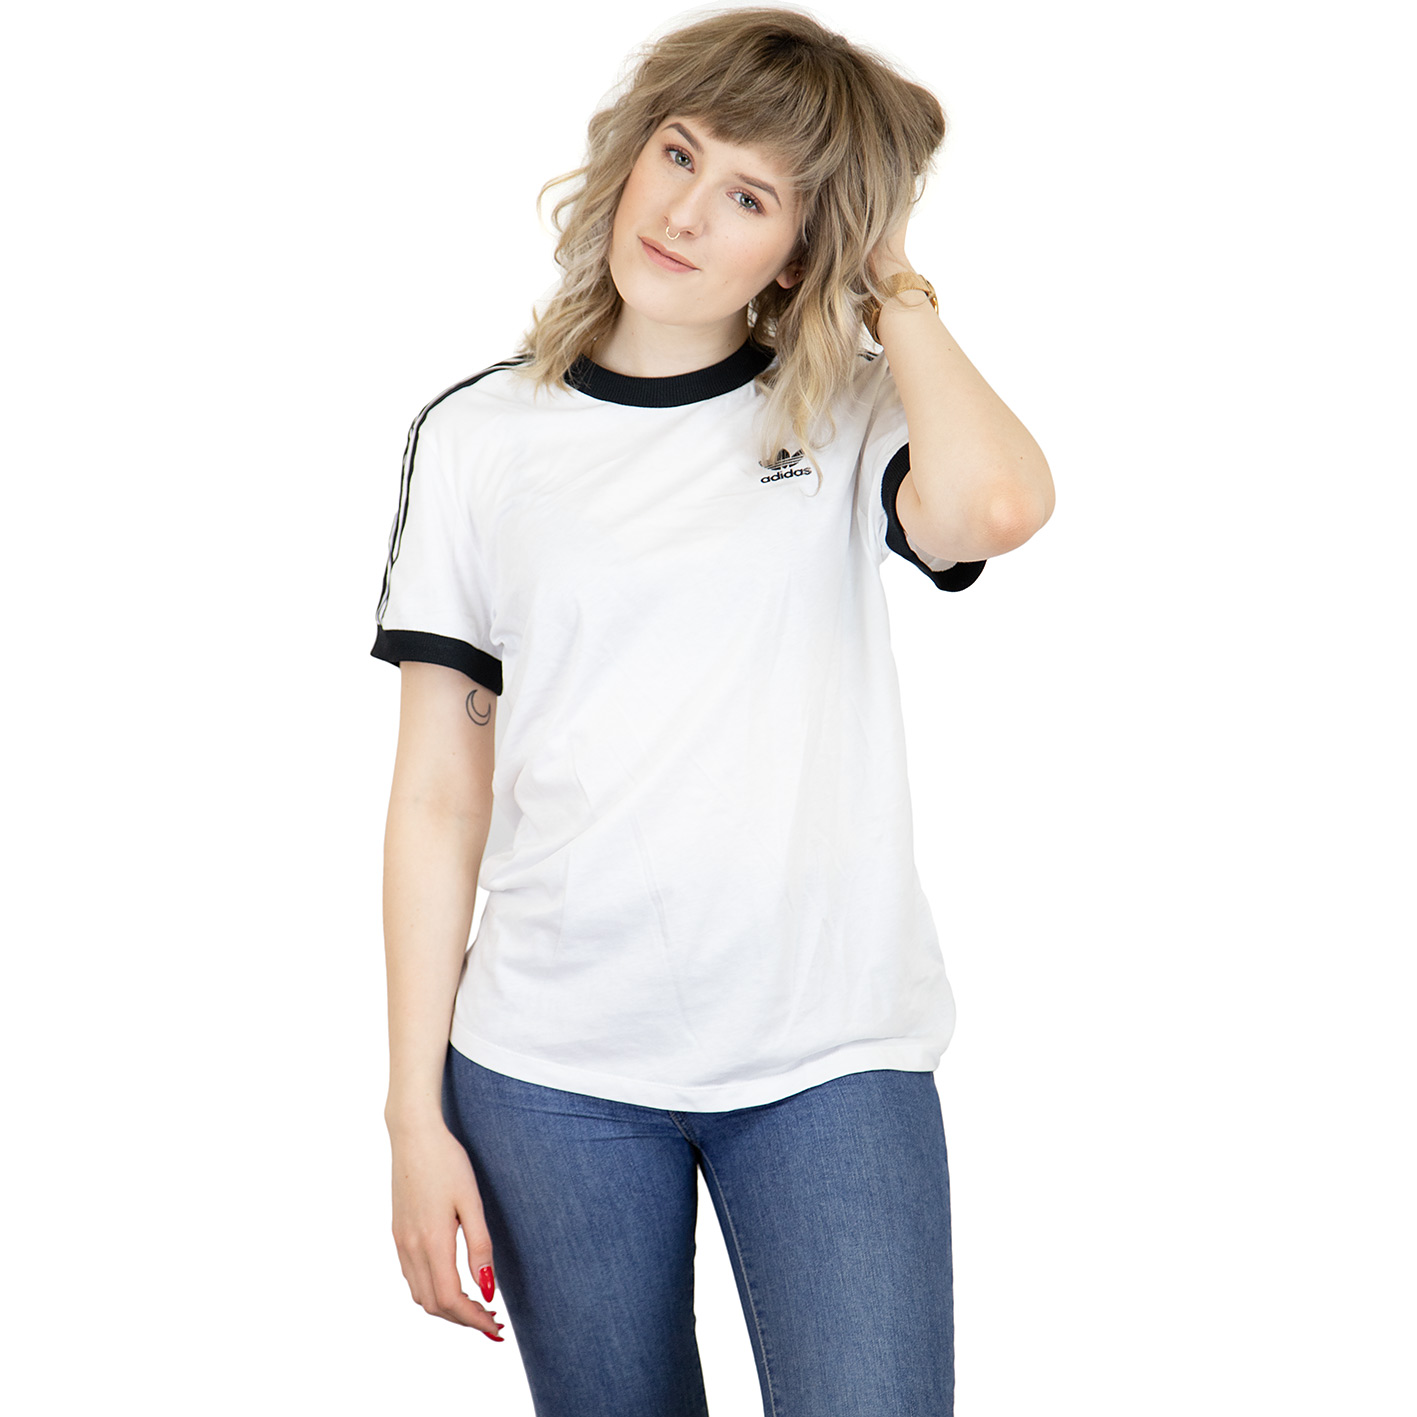 ☆ Adidas Originals T-Shirt 3 Stripes weiß/schwarz -